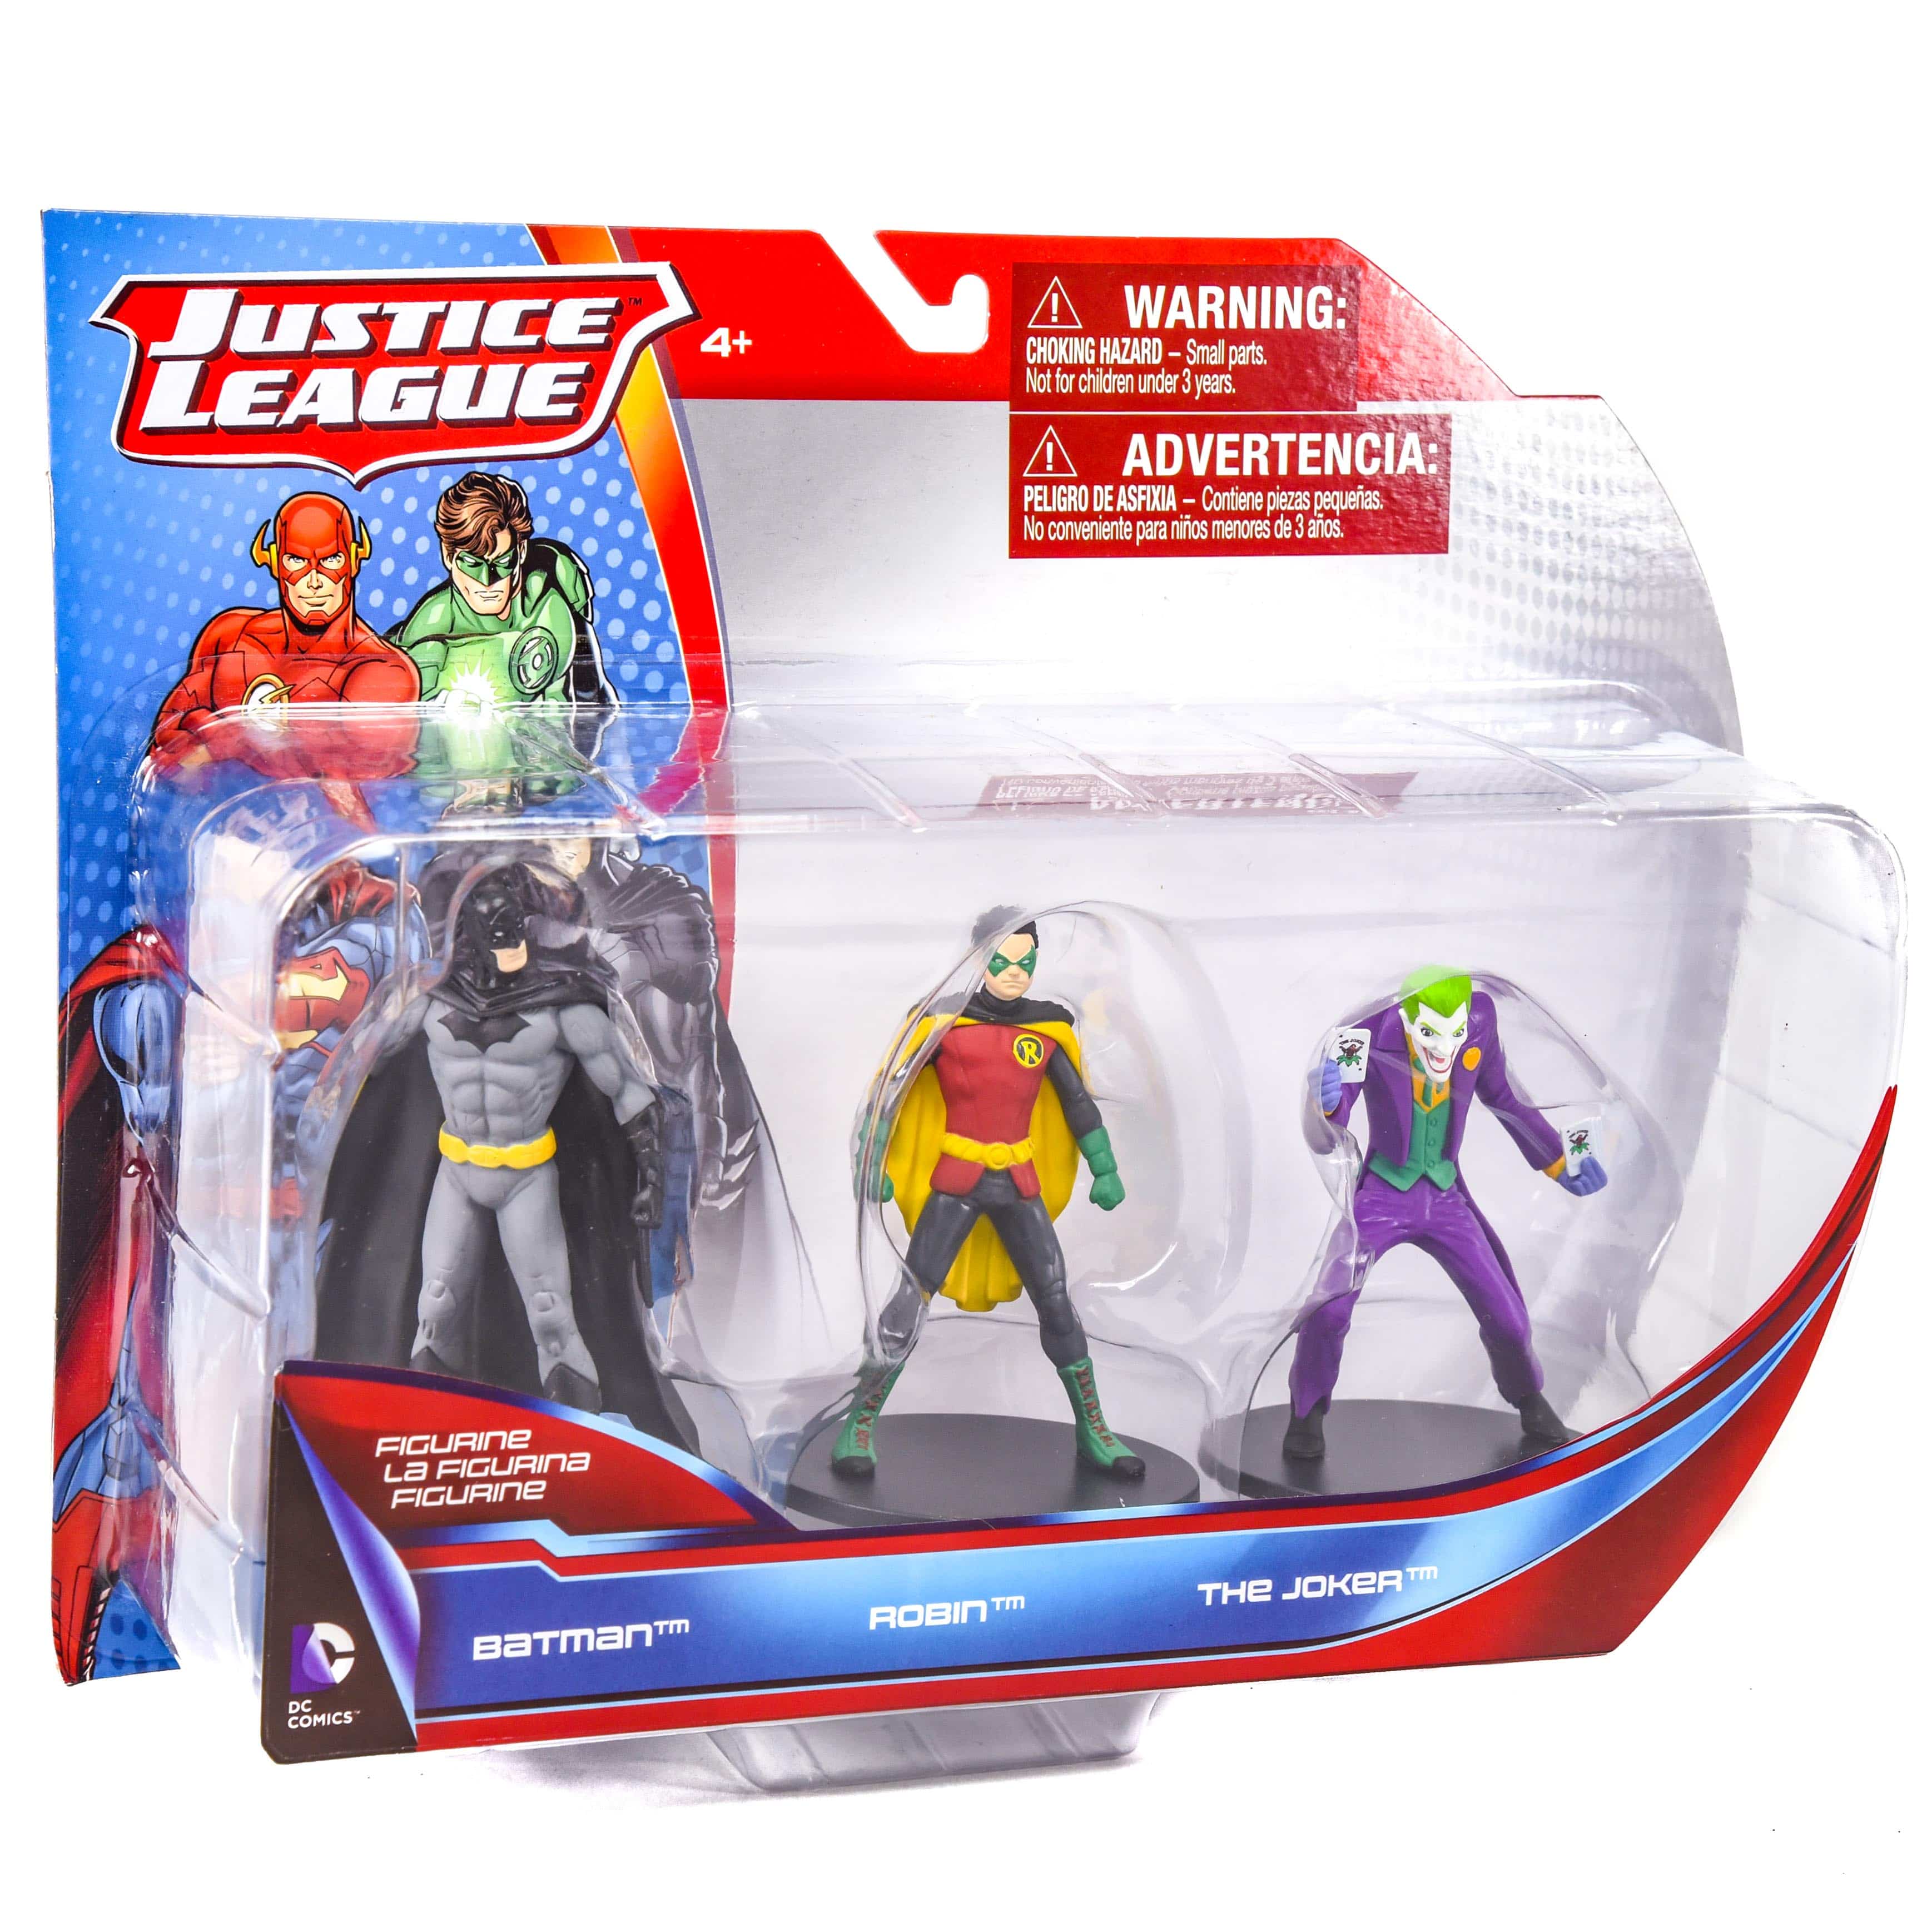 justice league toy set